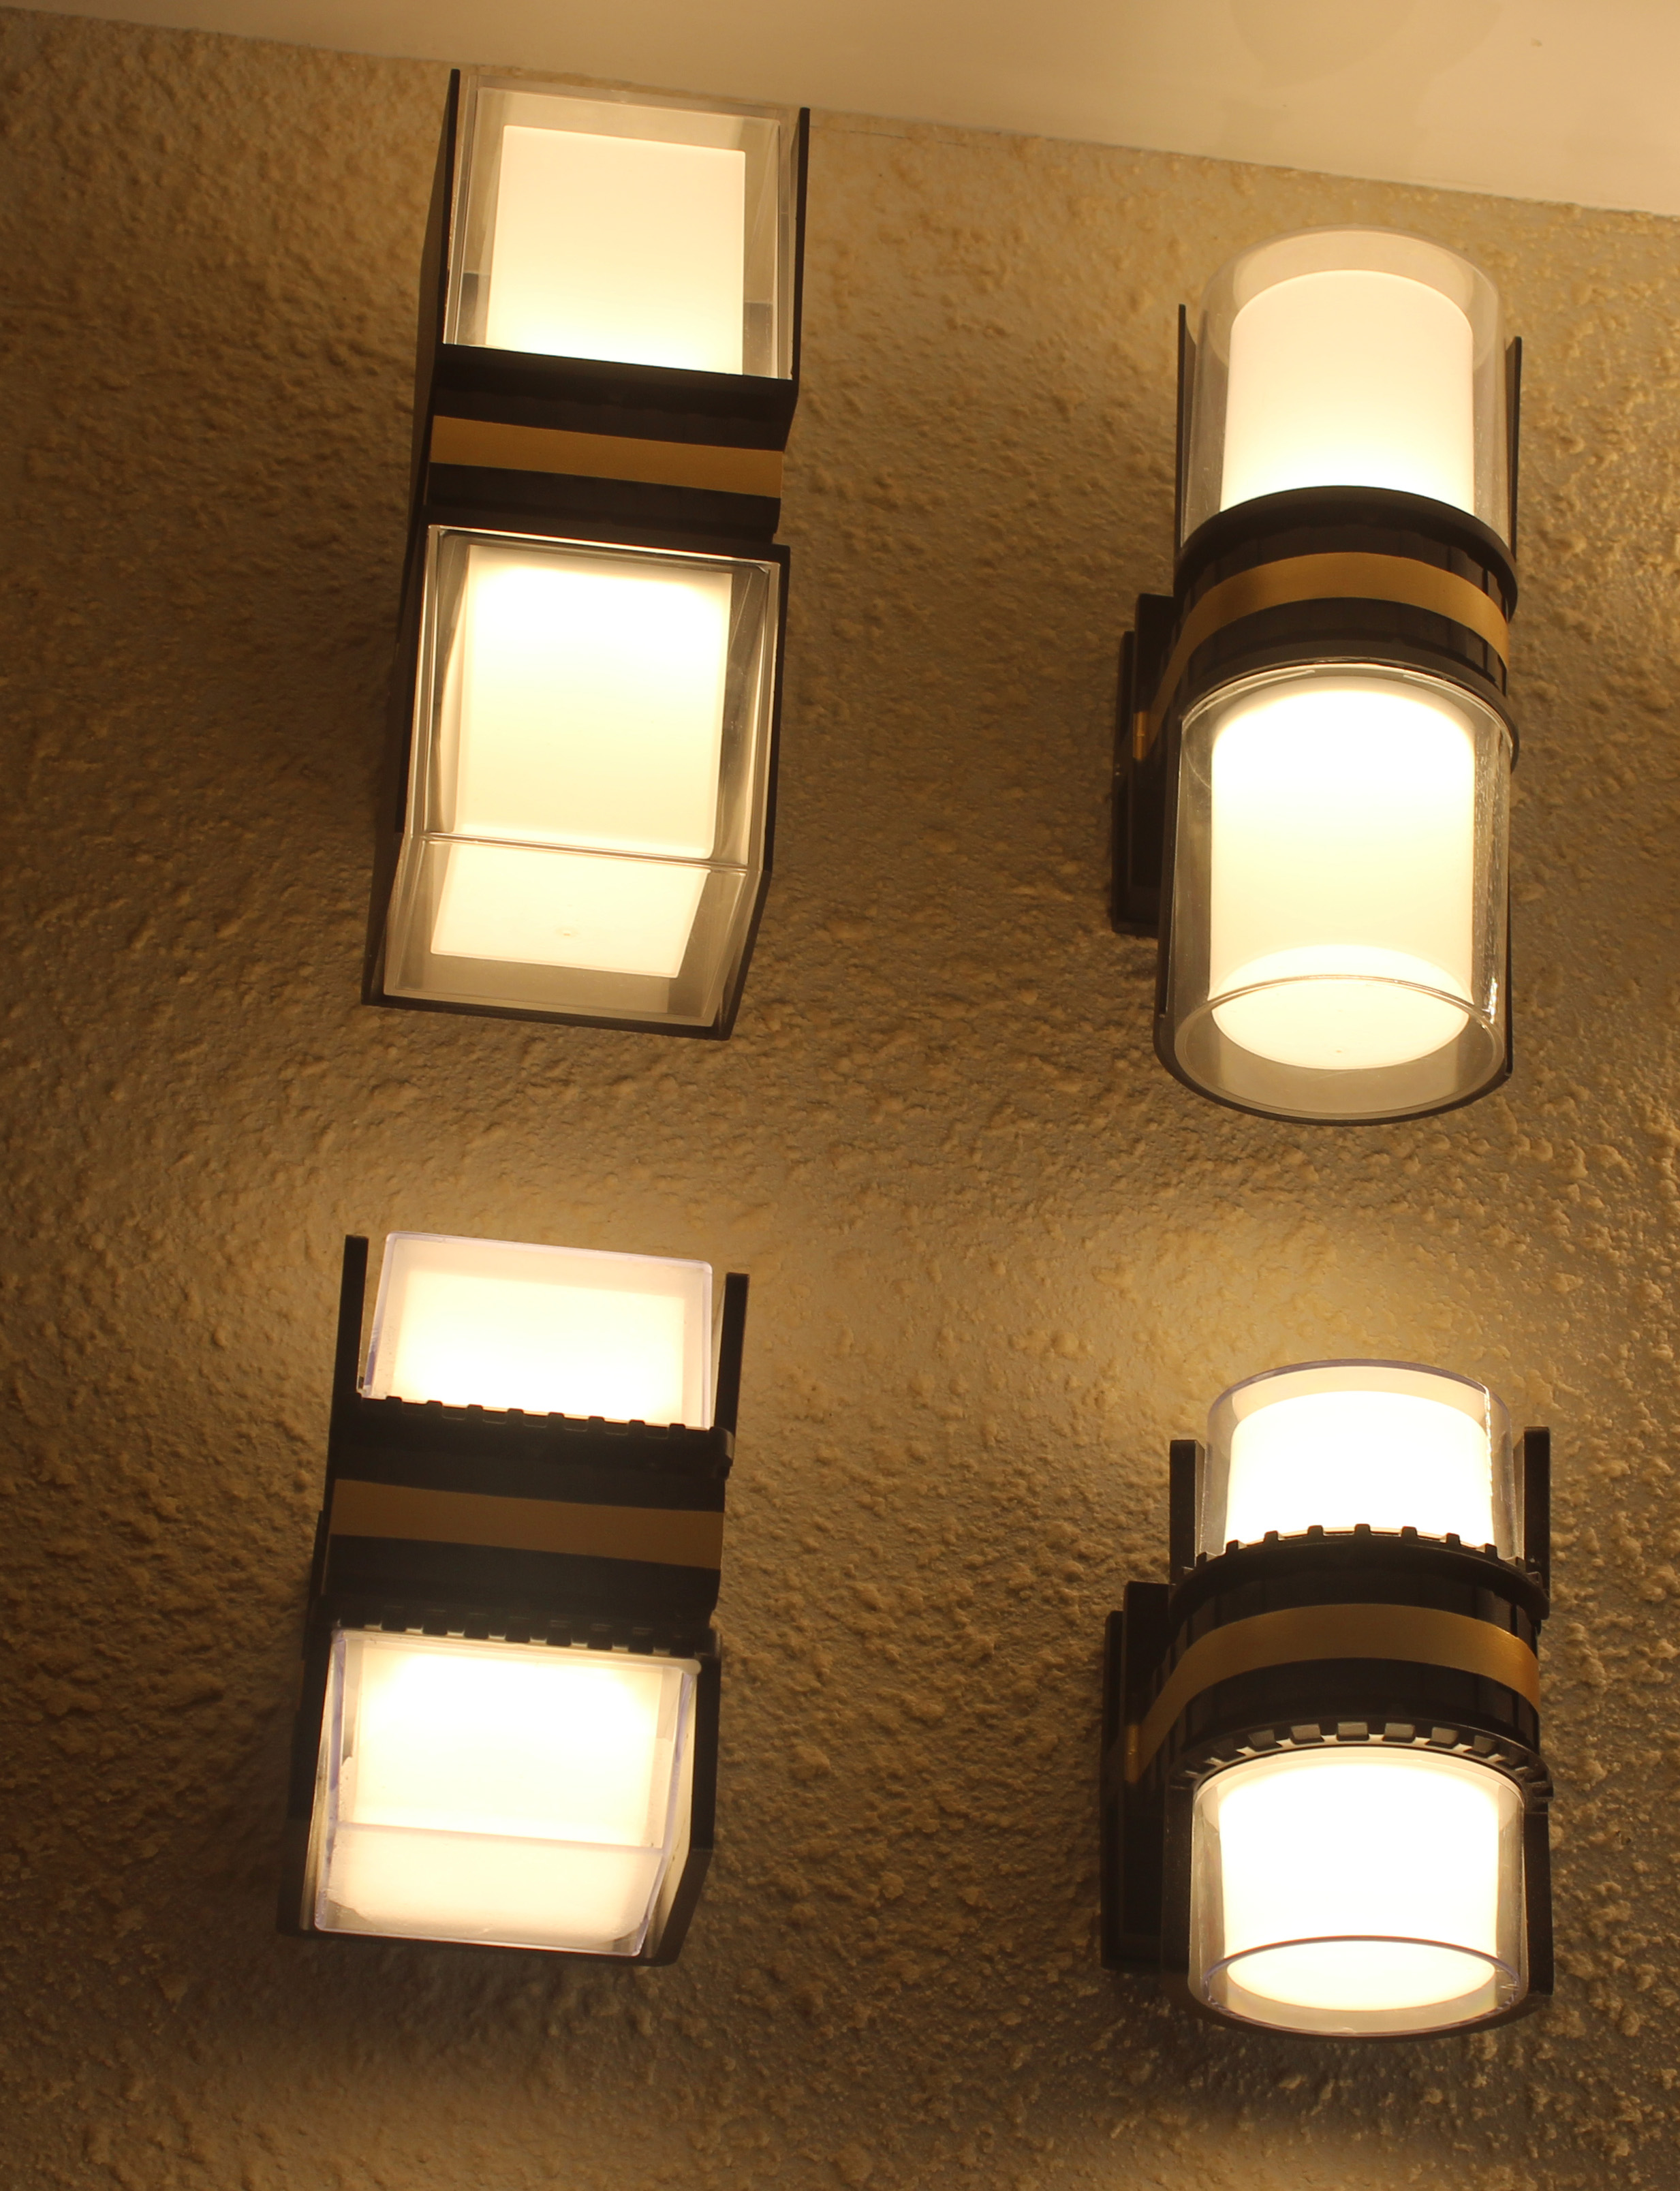 LED室内外壁灯